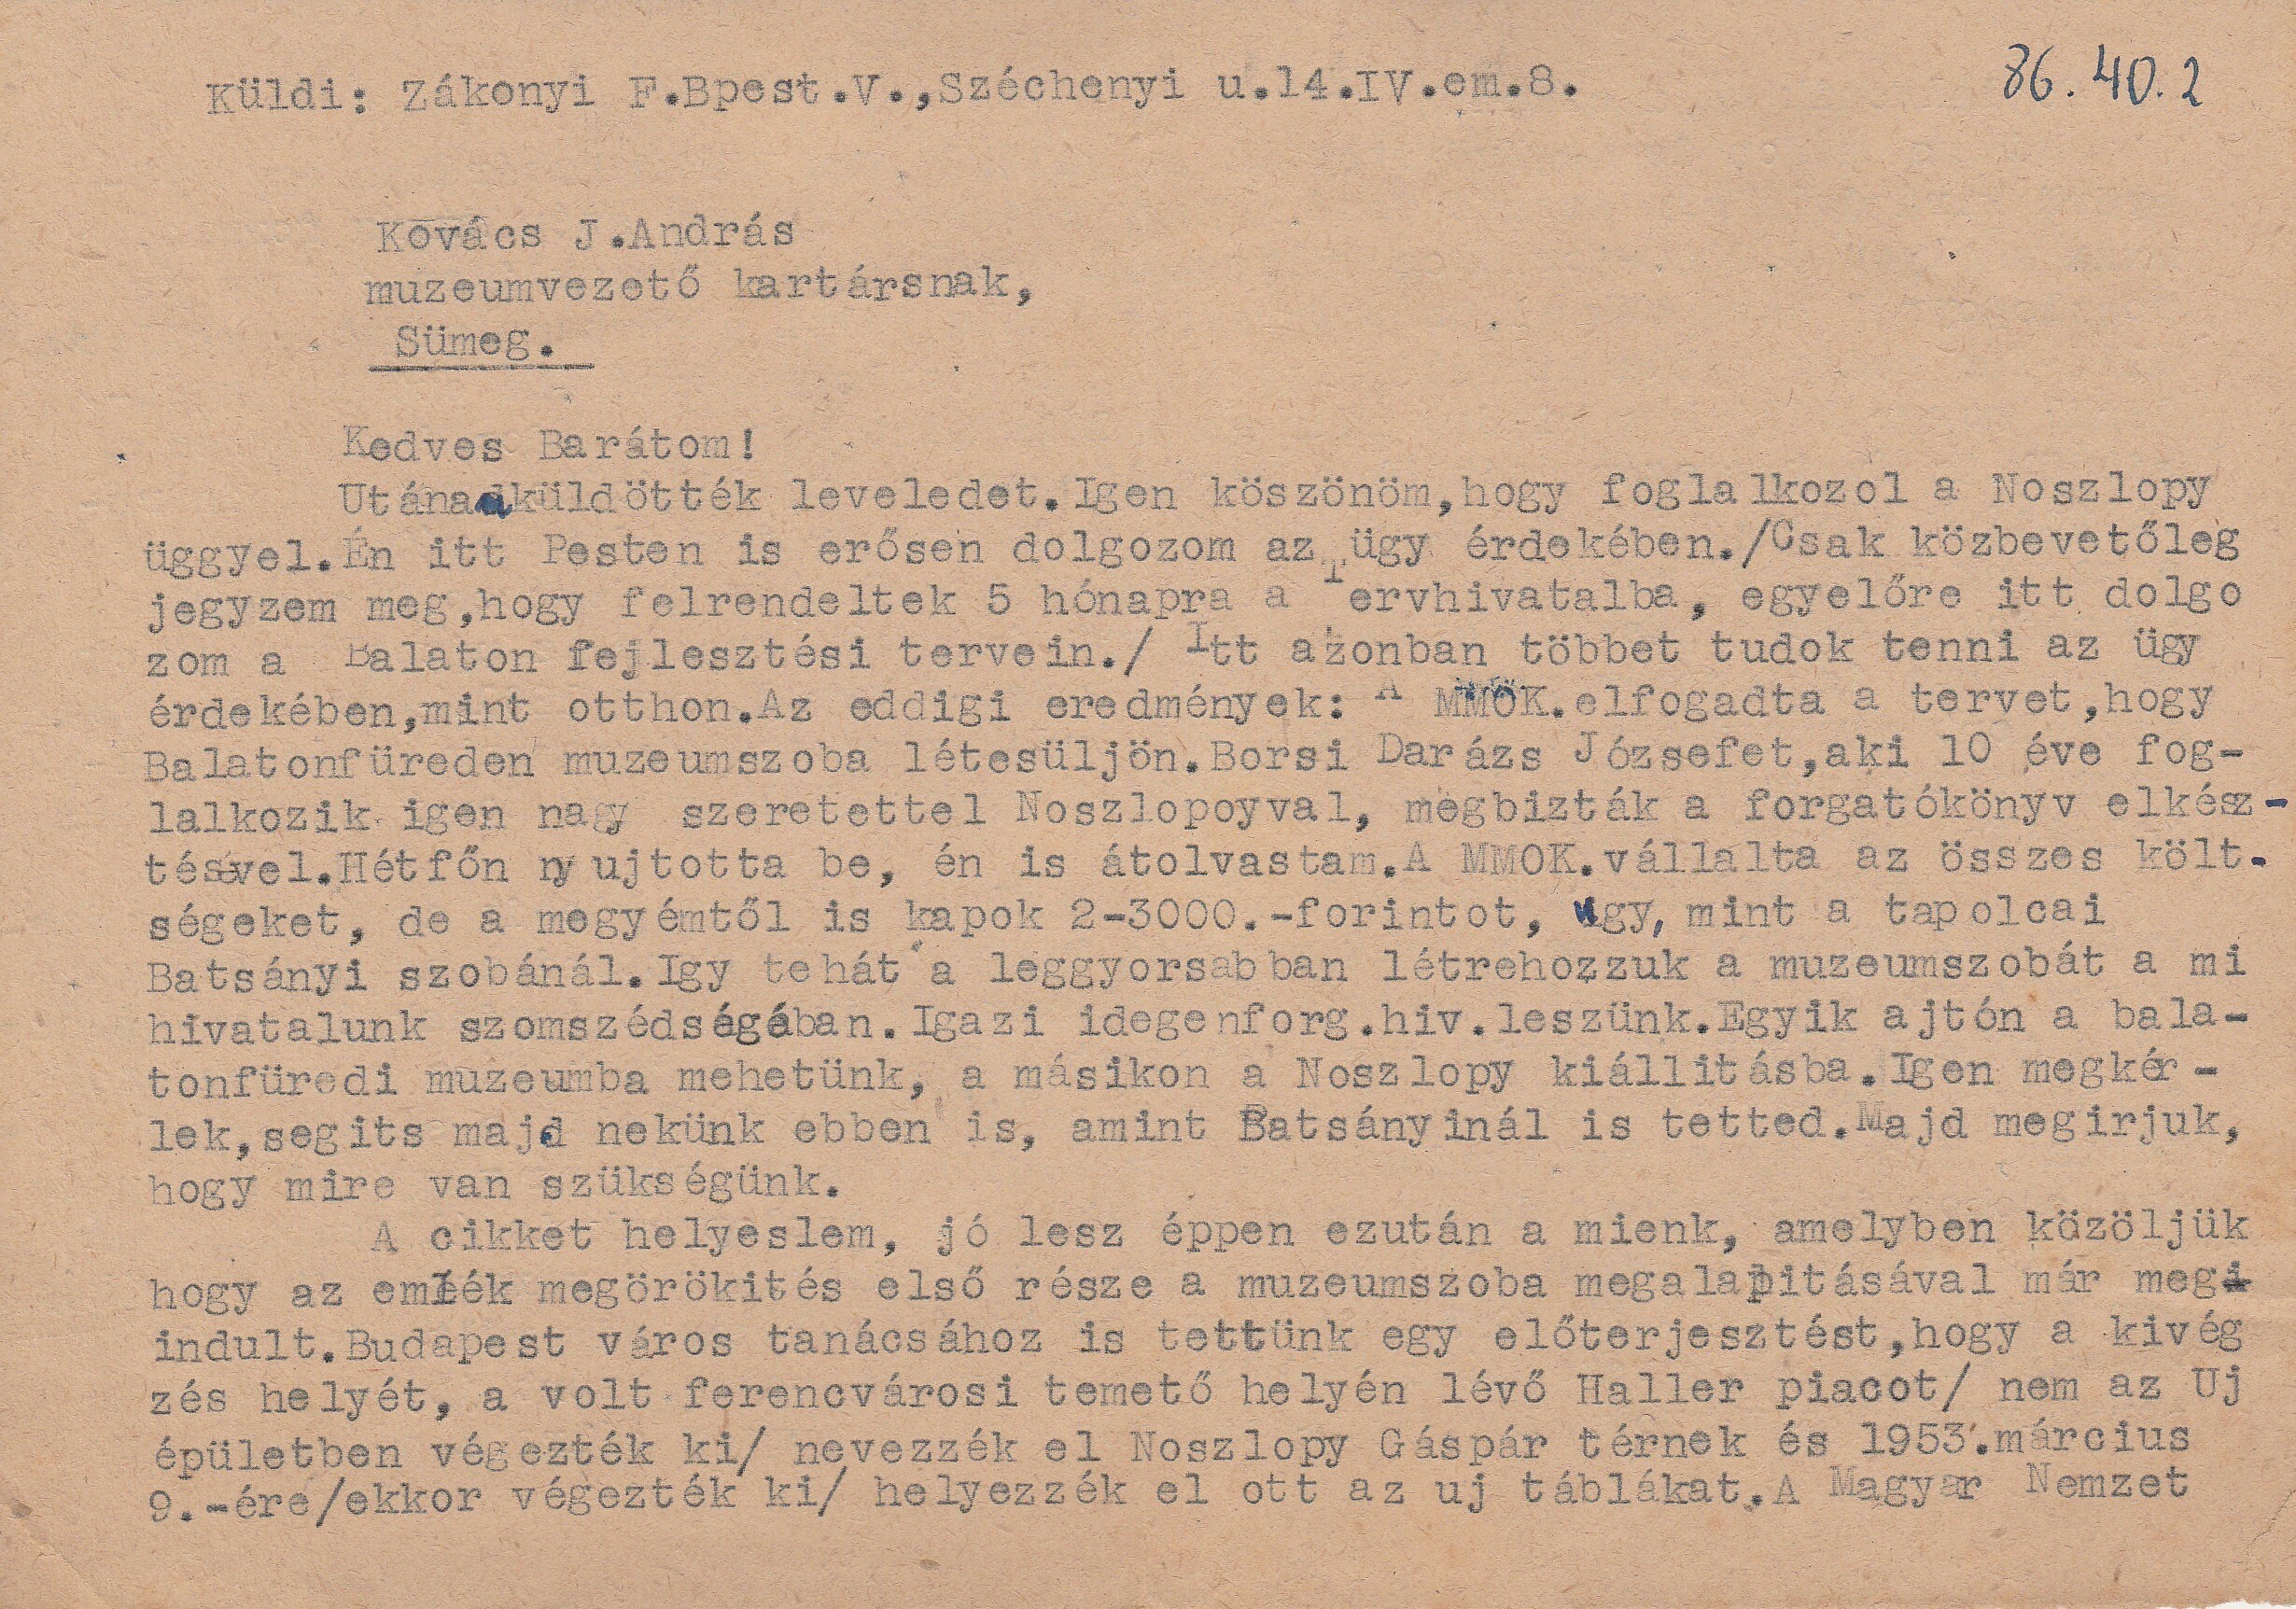 Zákonyi Ferenc levele Kovács J. András múzeumvezetőnek (Tapolcai Városi Múzeum CC BY-NC-SA)